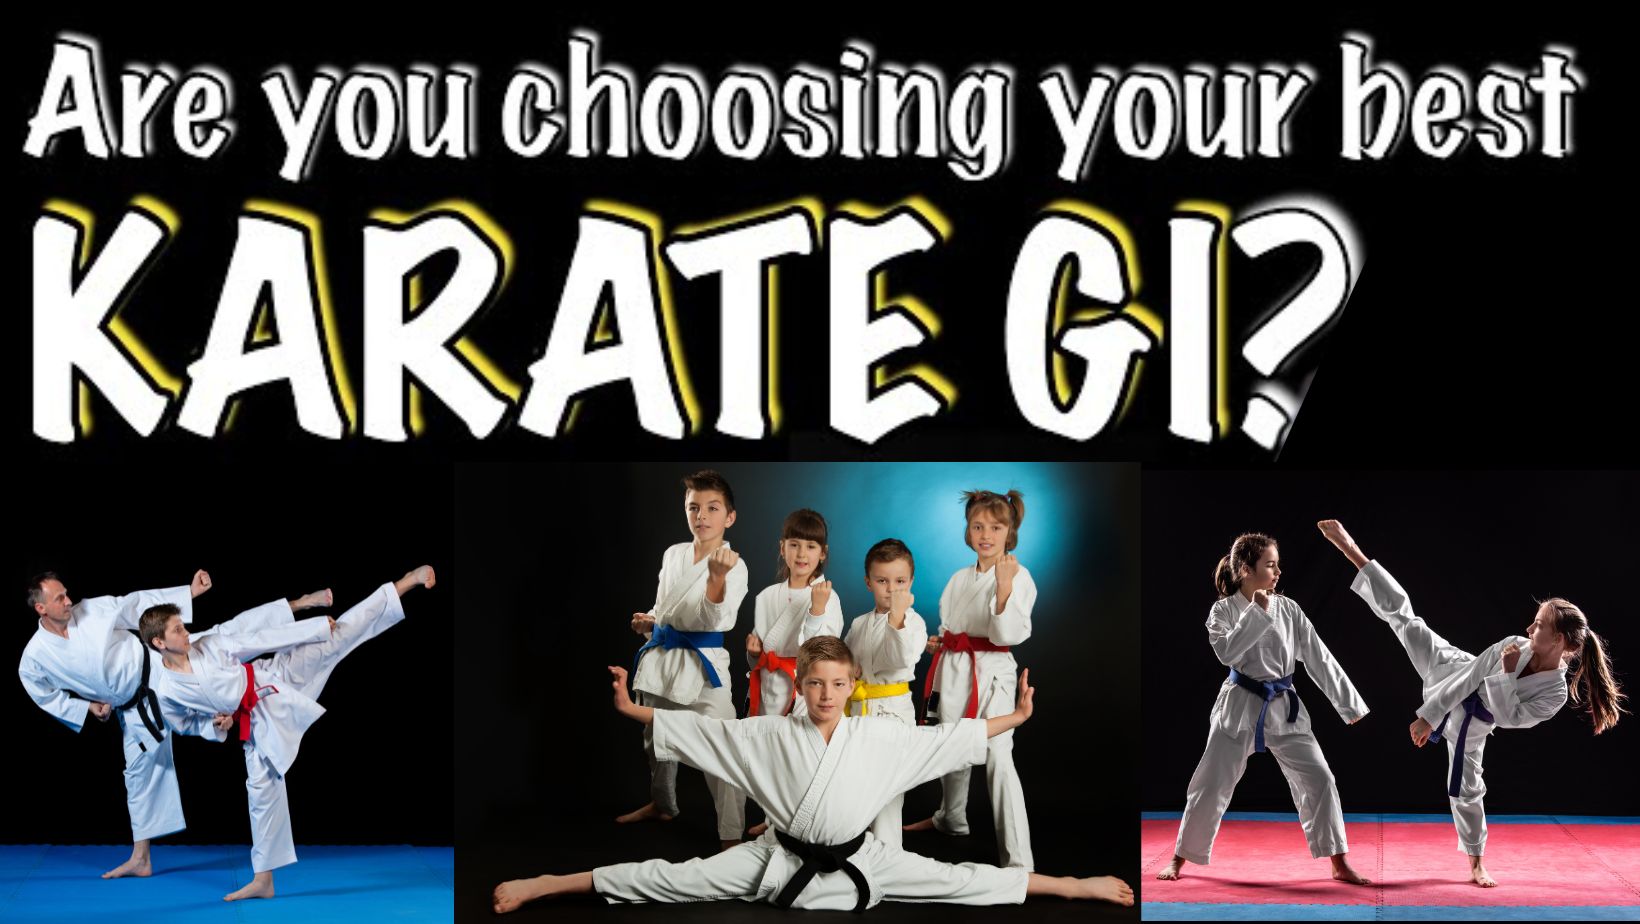 Best karate gi